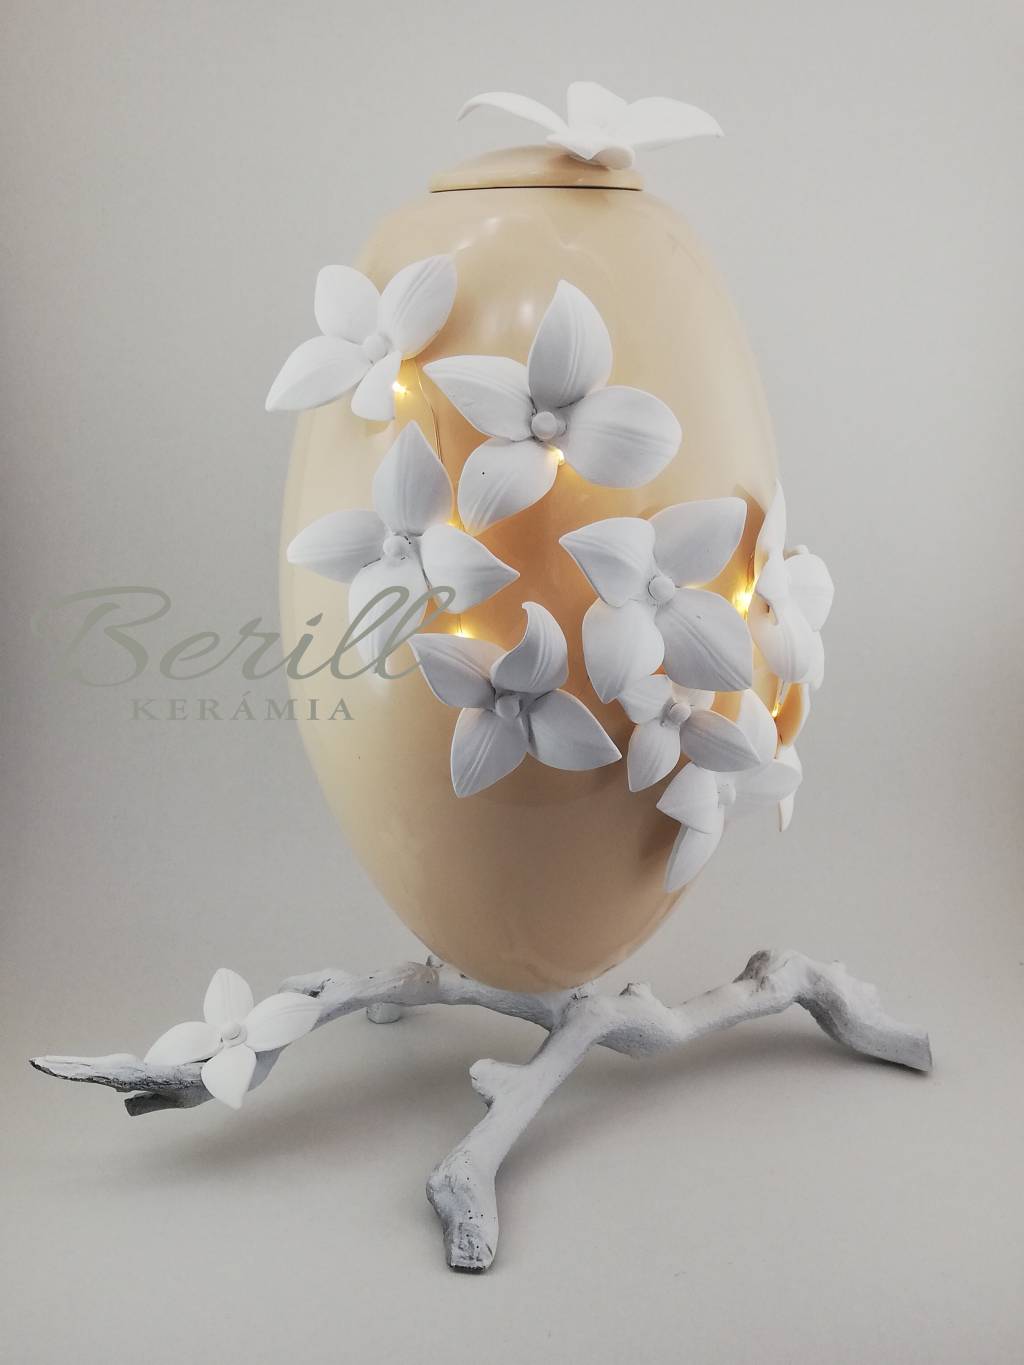 Kerámia ovál urna drapp fehér virágokkal, lábon álló,led hangulatvilágítással.  OU-DFVL